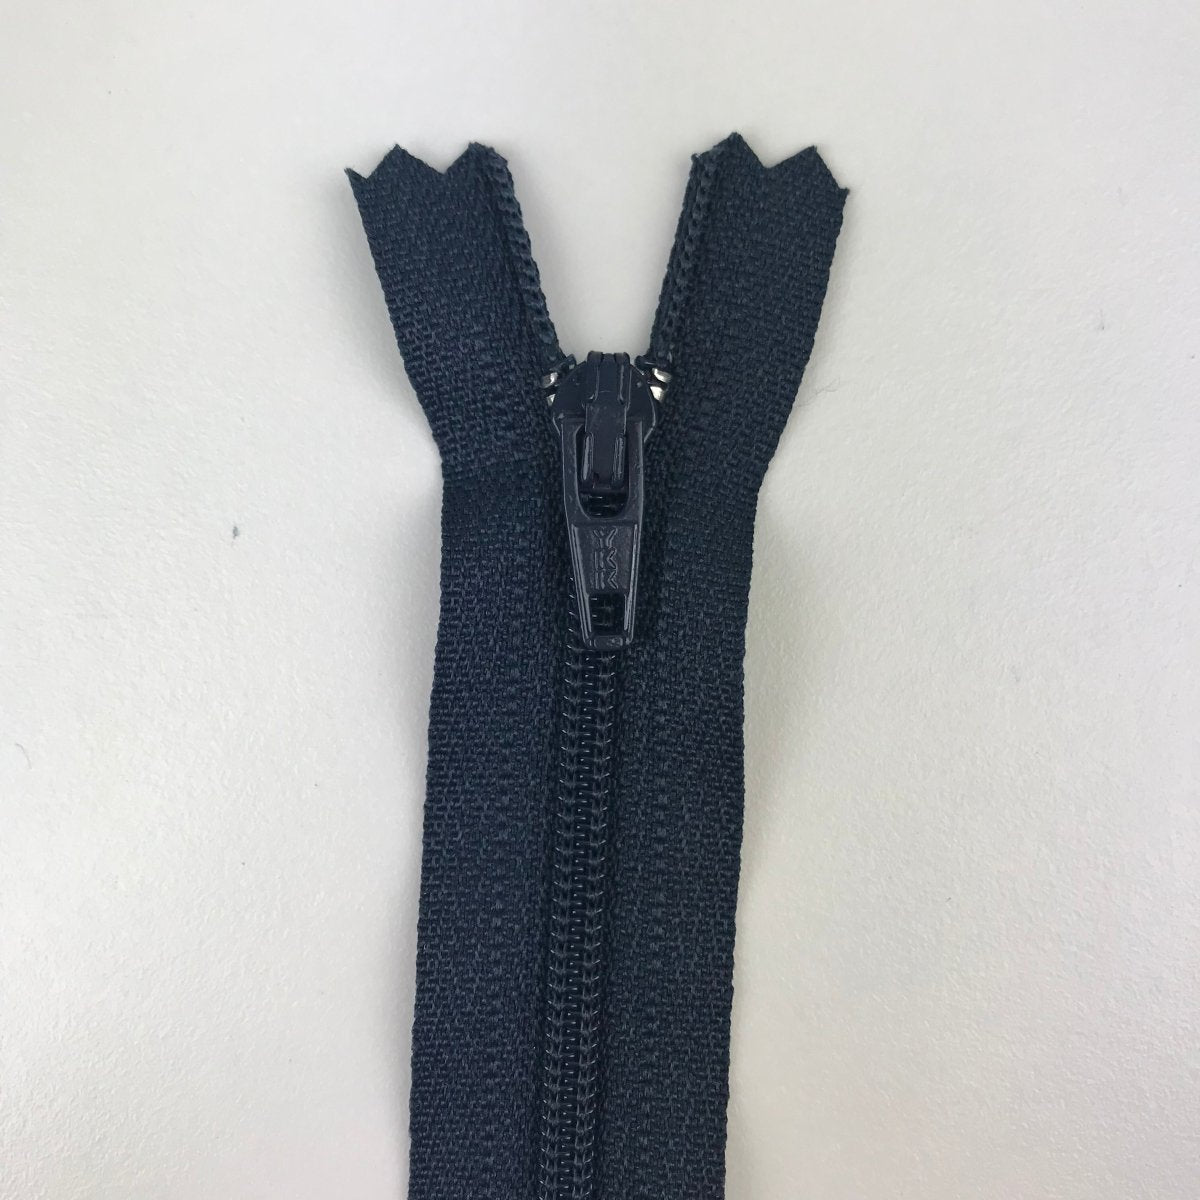 YKK Zipper - Skirt and Dress - 18cm (7") - Sewing Gem